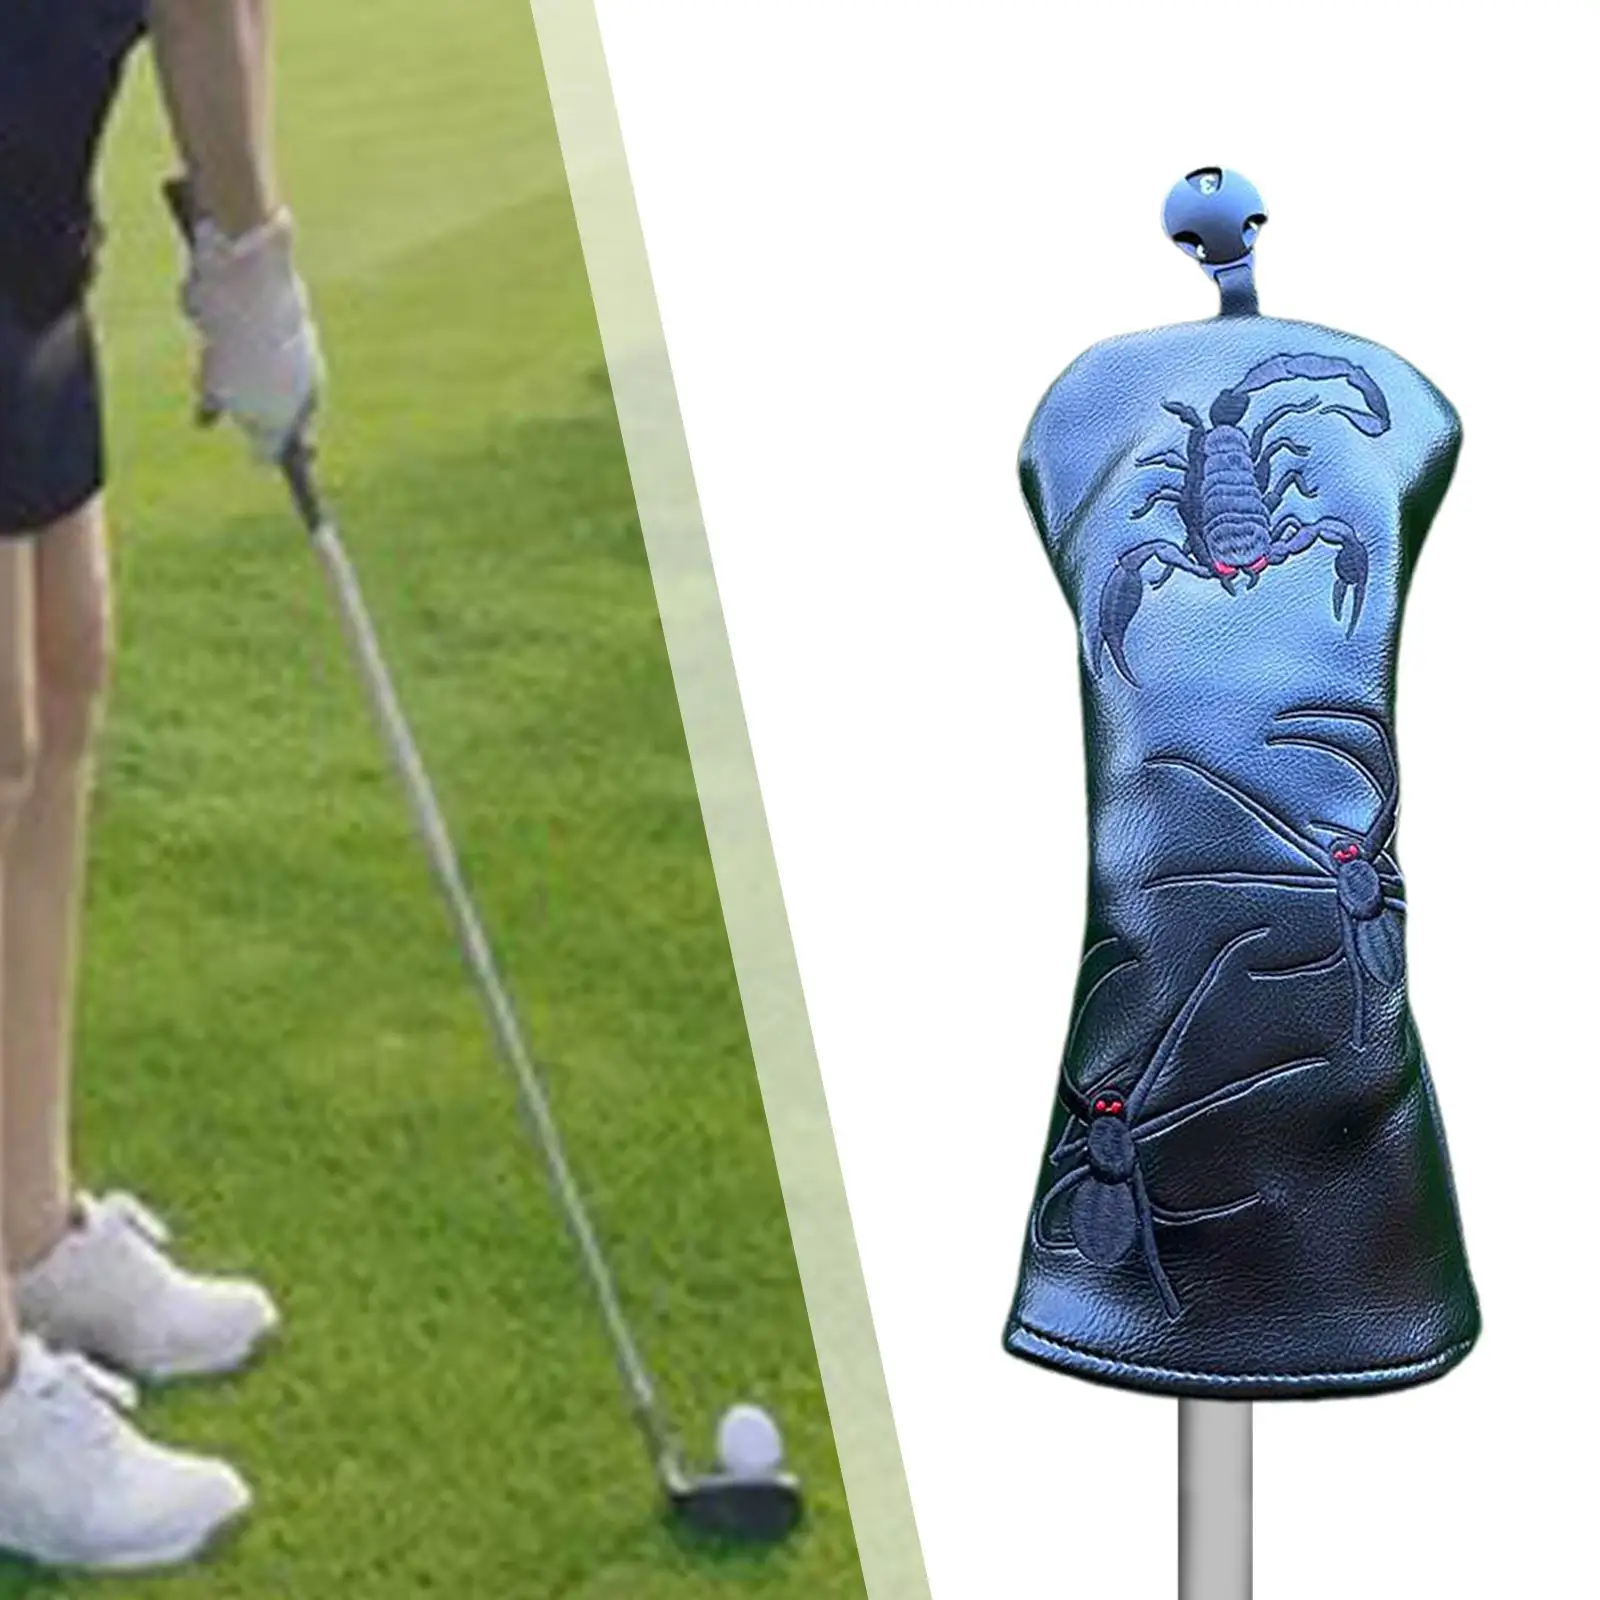 Головной убор для клюшки для гольфа, защитный рукав с защитой от царапин, подарок гольфисту на флисовой подкладке